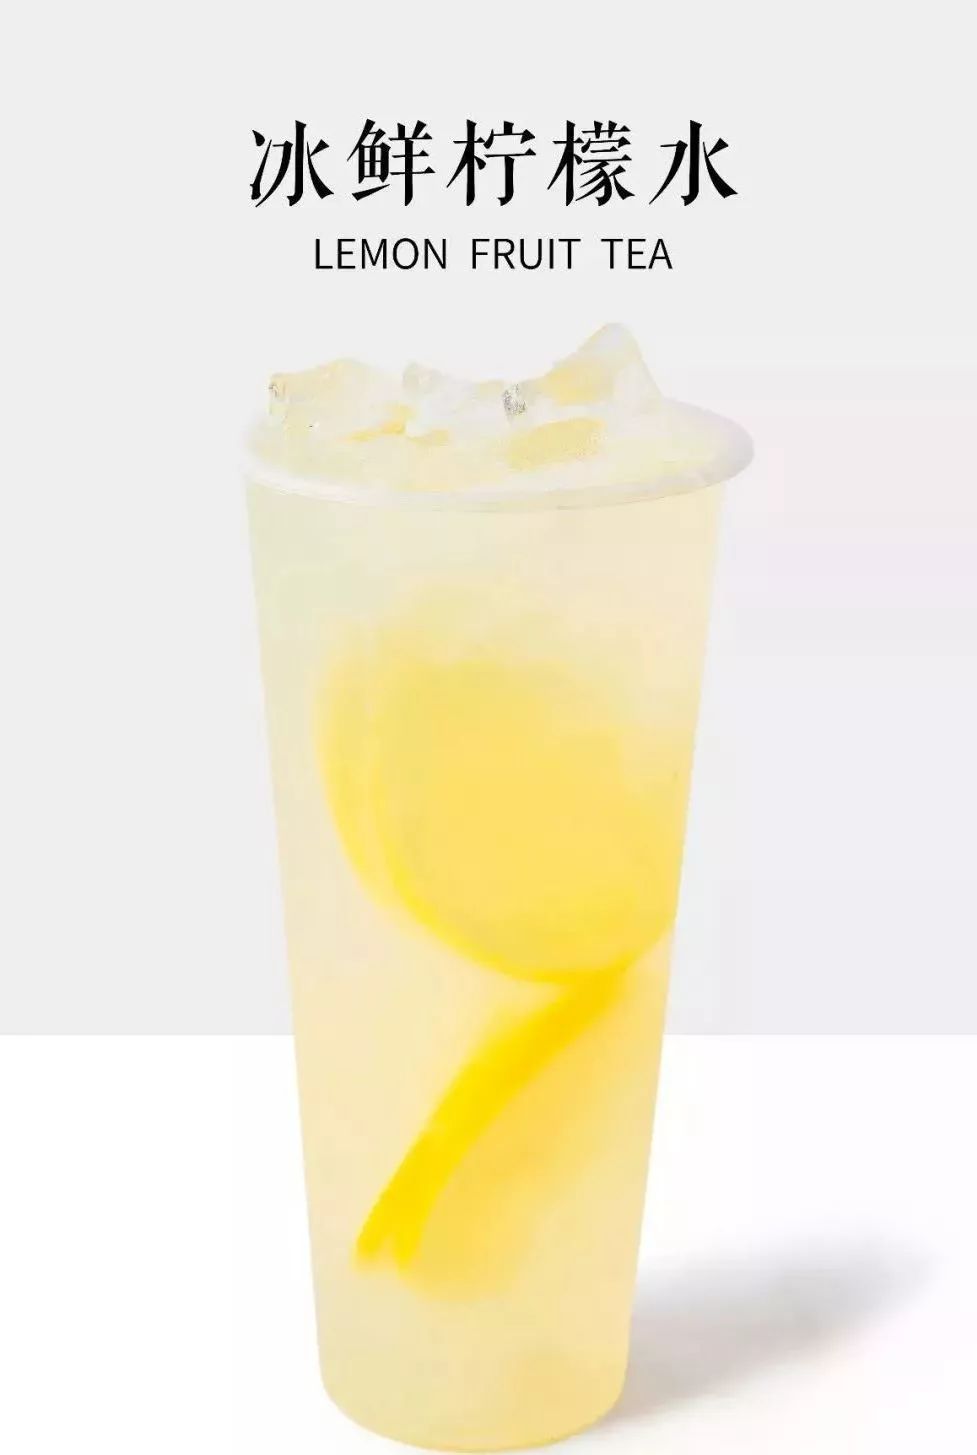 冰鲜柠檬水作为蜜雪冰城的 经典流量型产品,成为点单爆品 酸甜可口